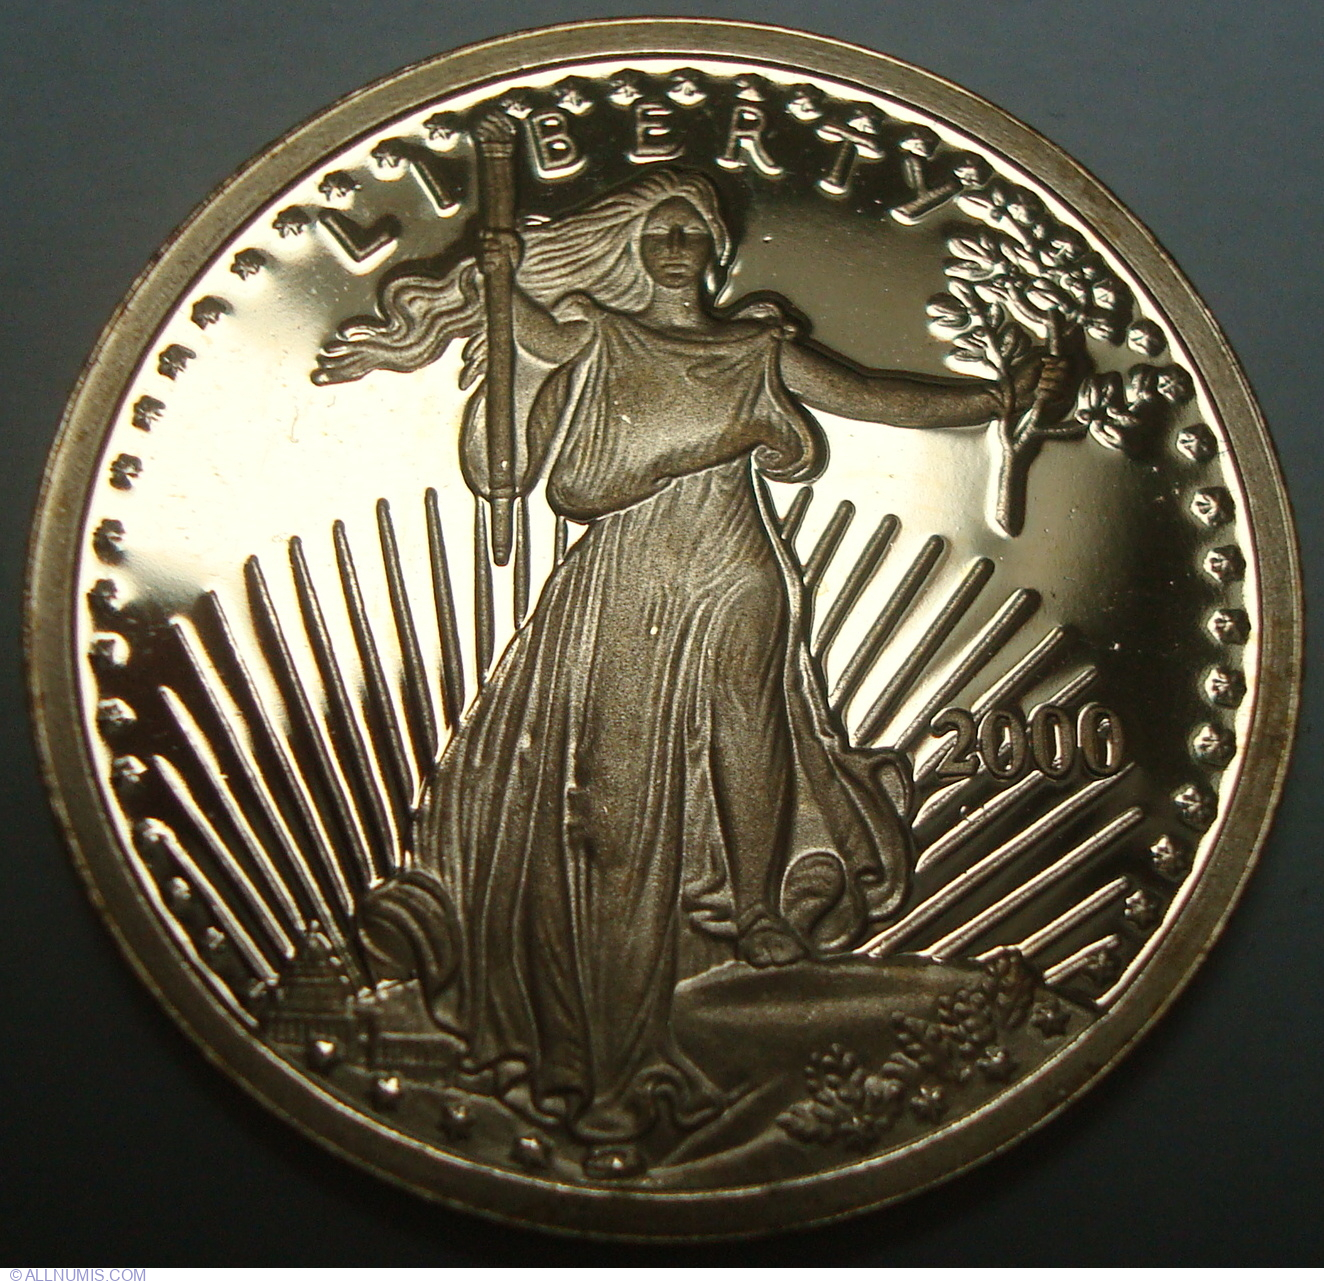 liberty coin 2000 – liberty 2000 1 oz silver dollar value – Robot Watch